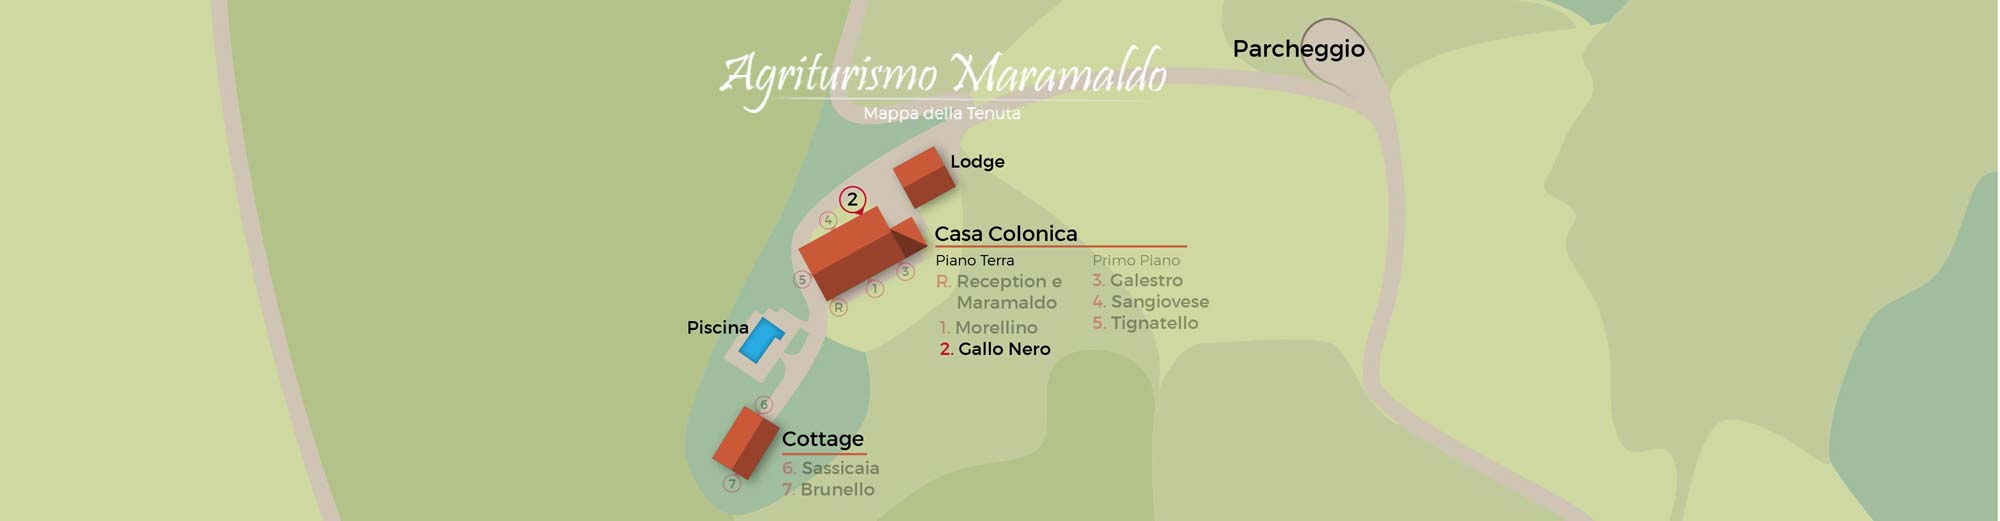 mappa Gallo Nero